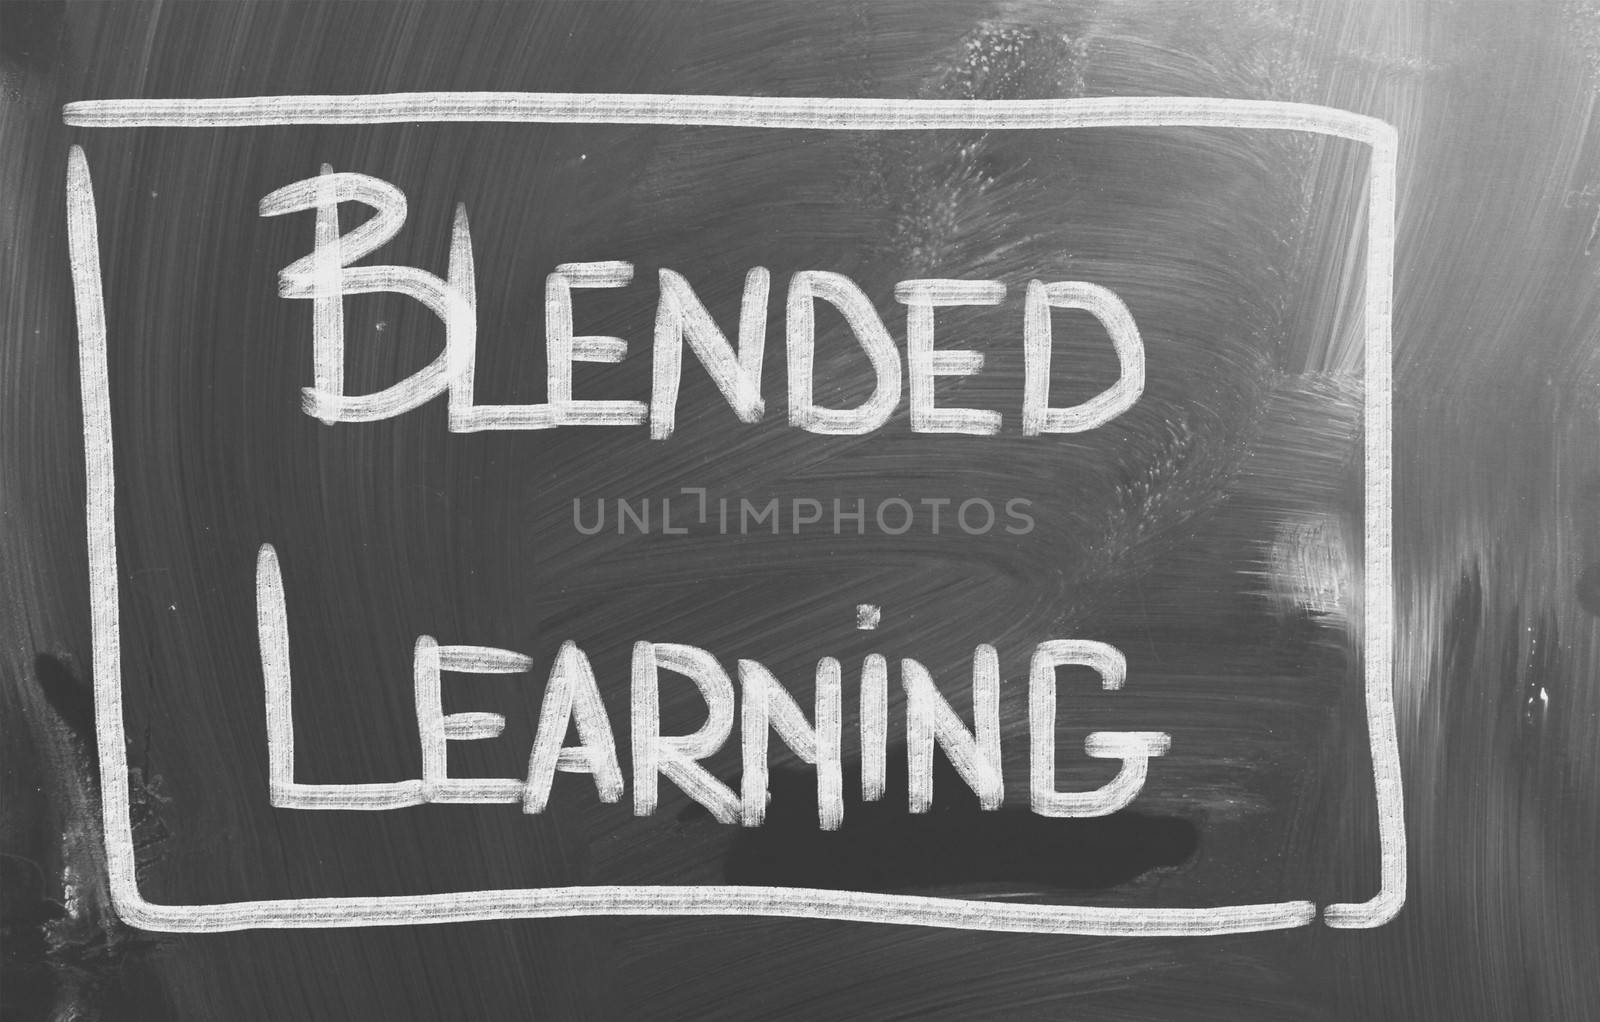 Blended Learning Concept by KrasimiraNevenova